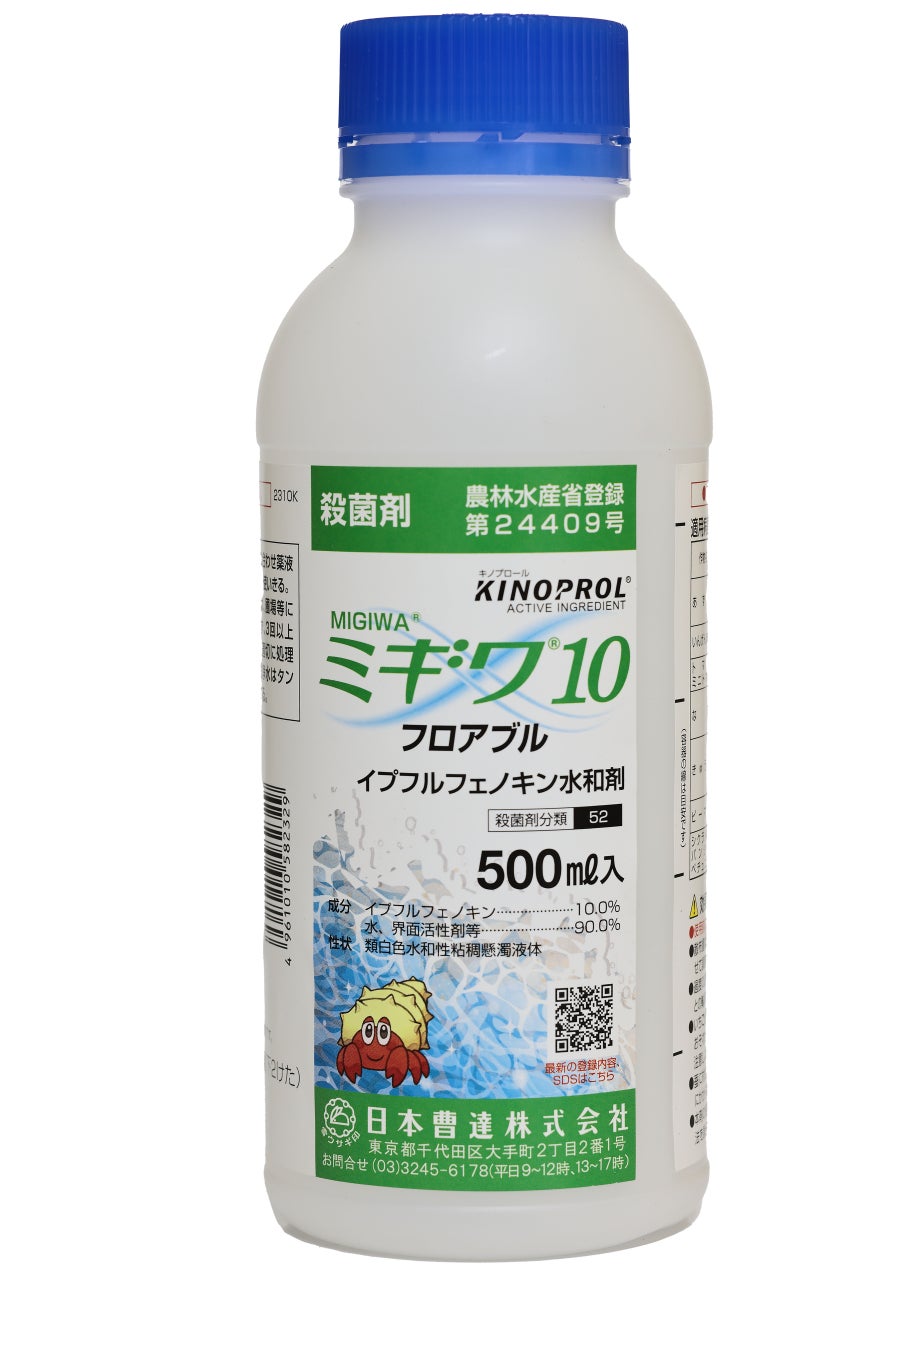 日本曹達（ニホンソーダ）、新規殺菌剤キノプロール®（製品名「ミギワ®10フロアブル」）の全国販売開始に関するお知らせのサブ画像1